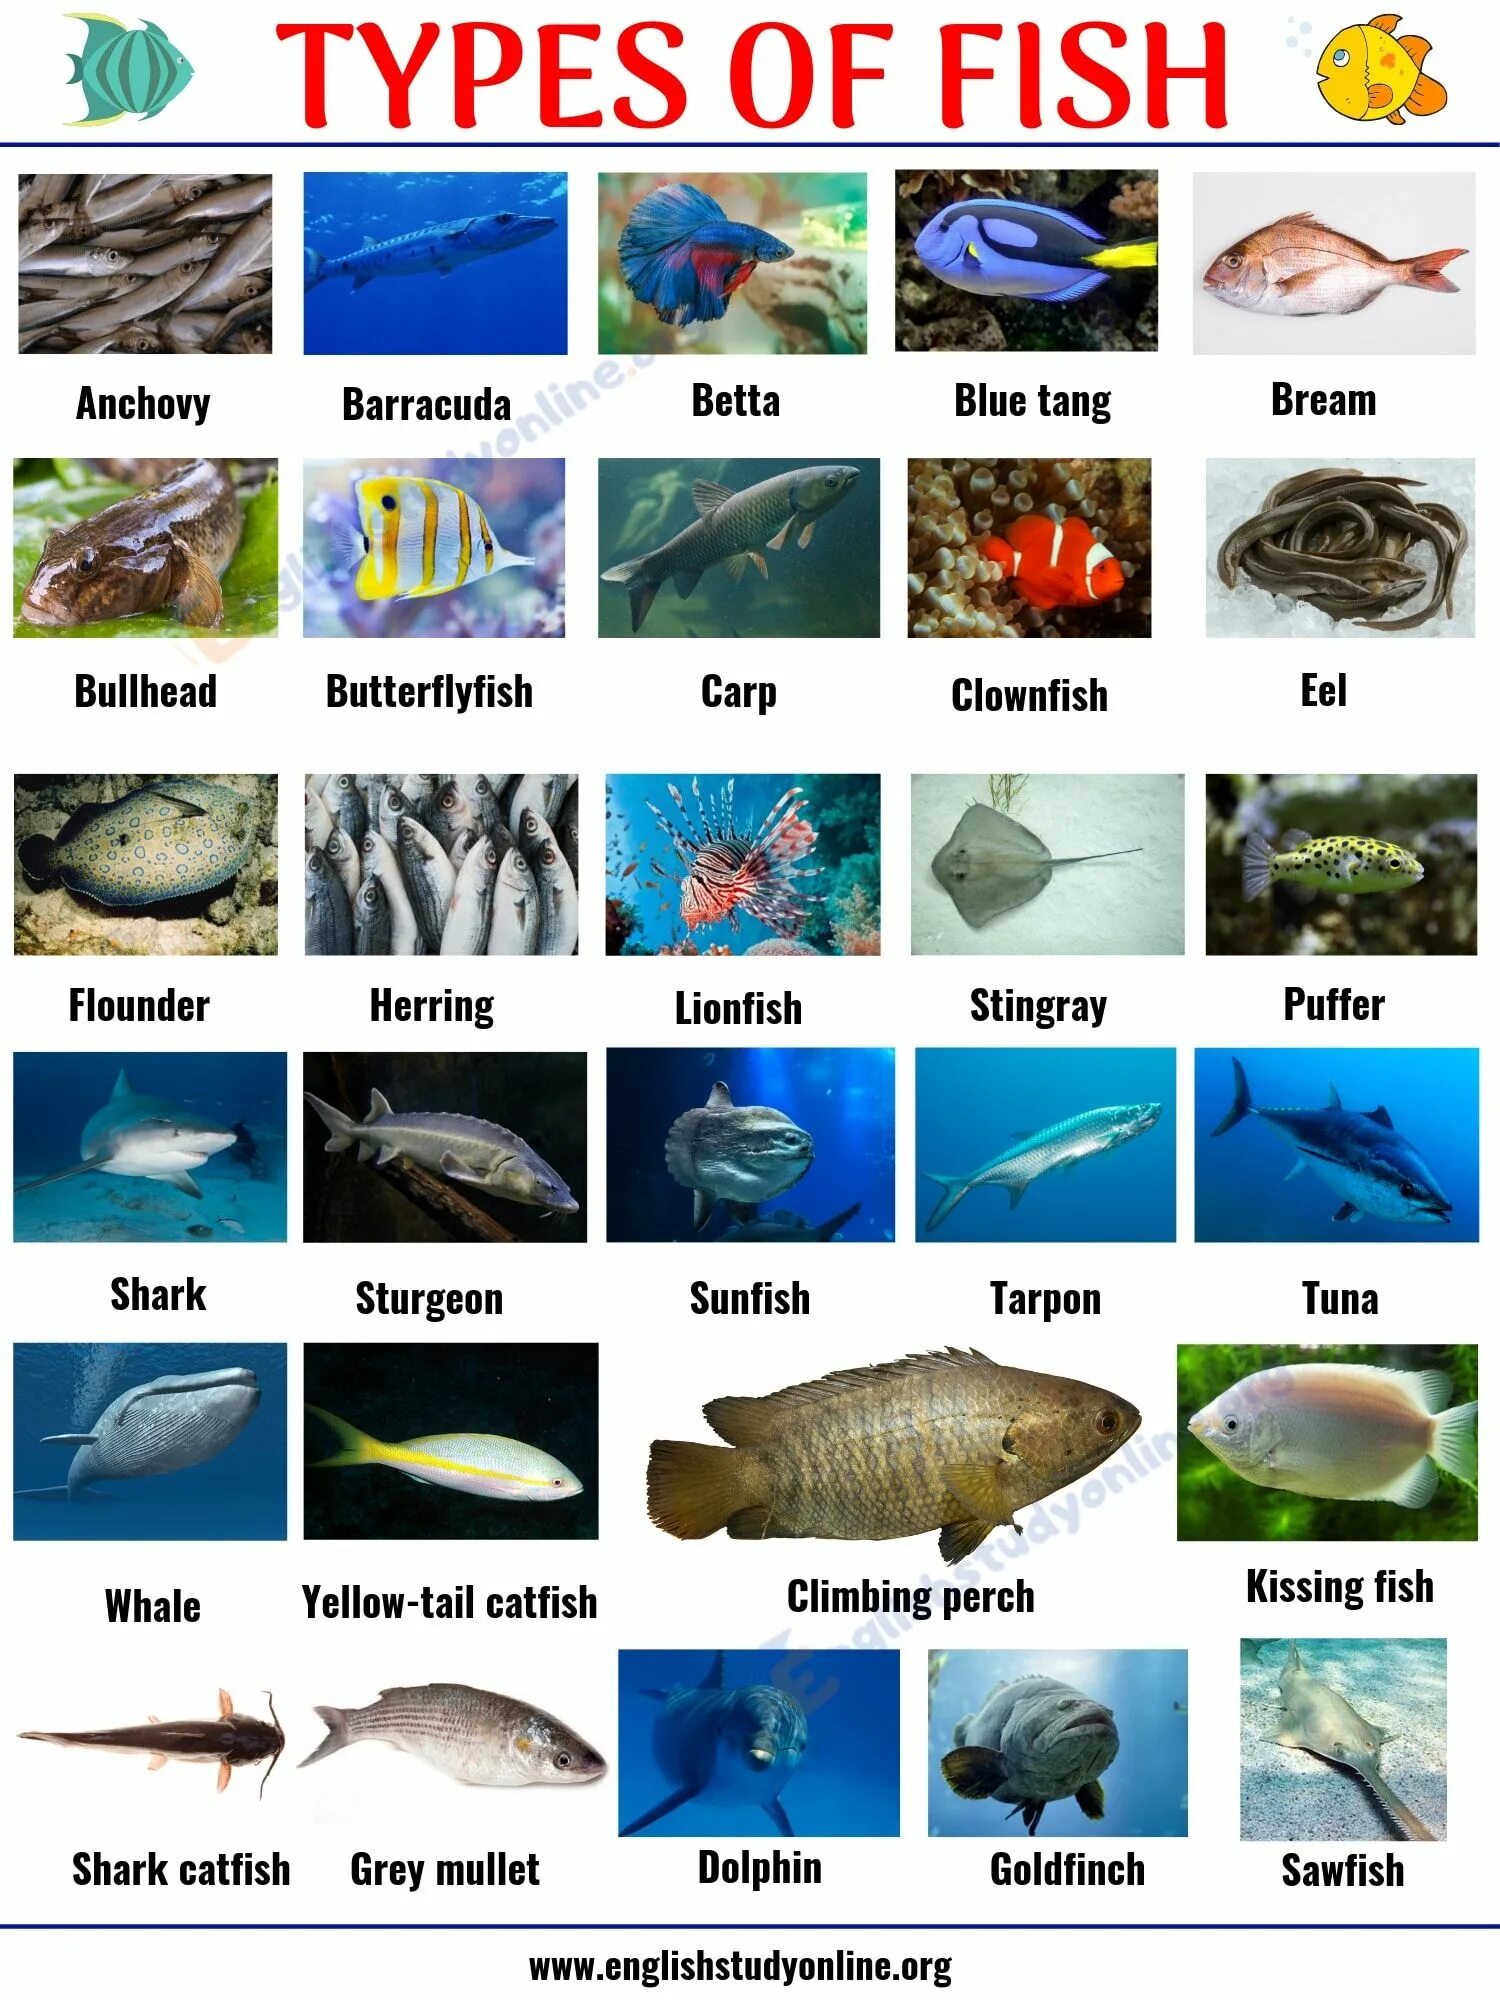 Fish name. Названия рыб на английском. Рыба на англ яз. Рыбы и их названия. Название рыб.